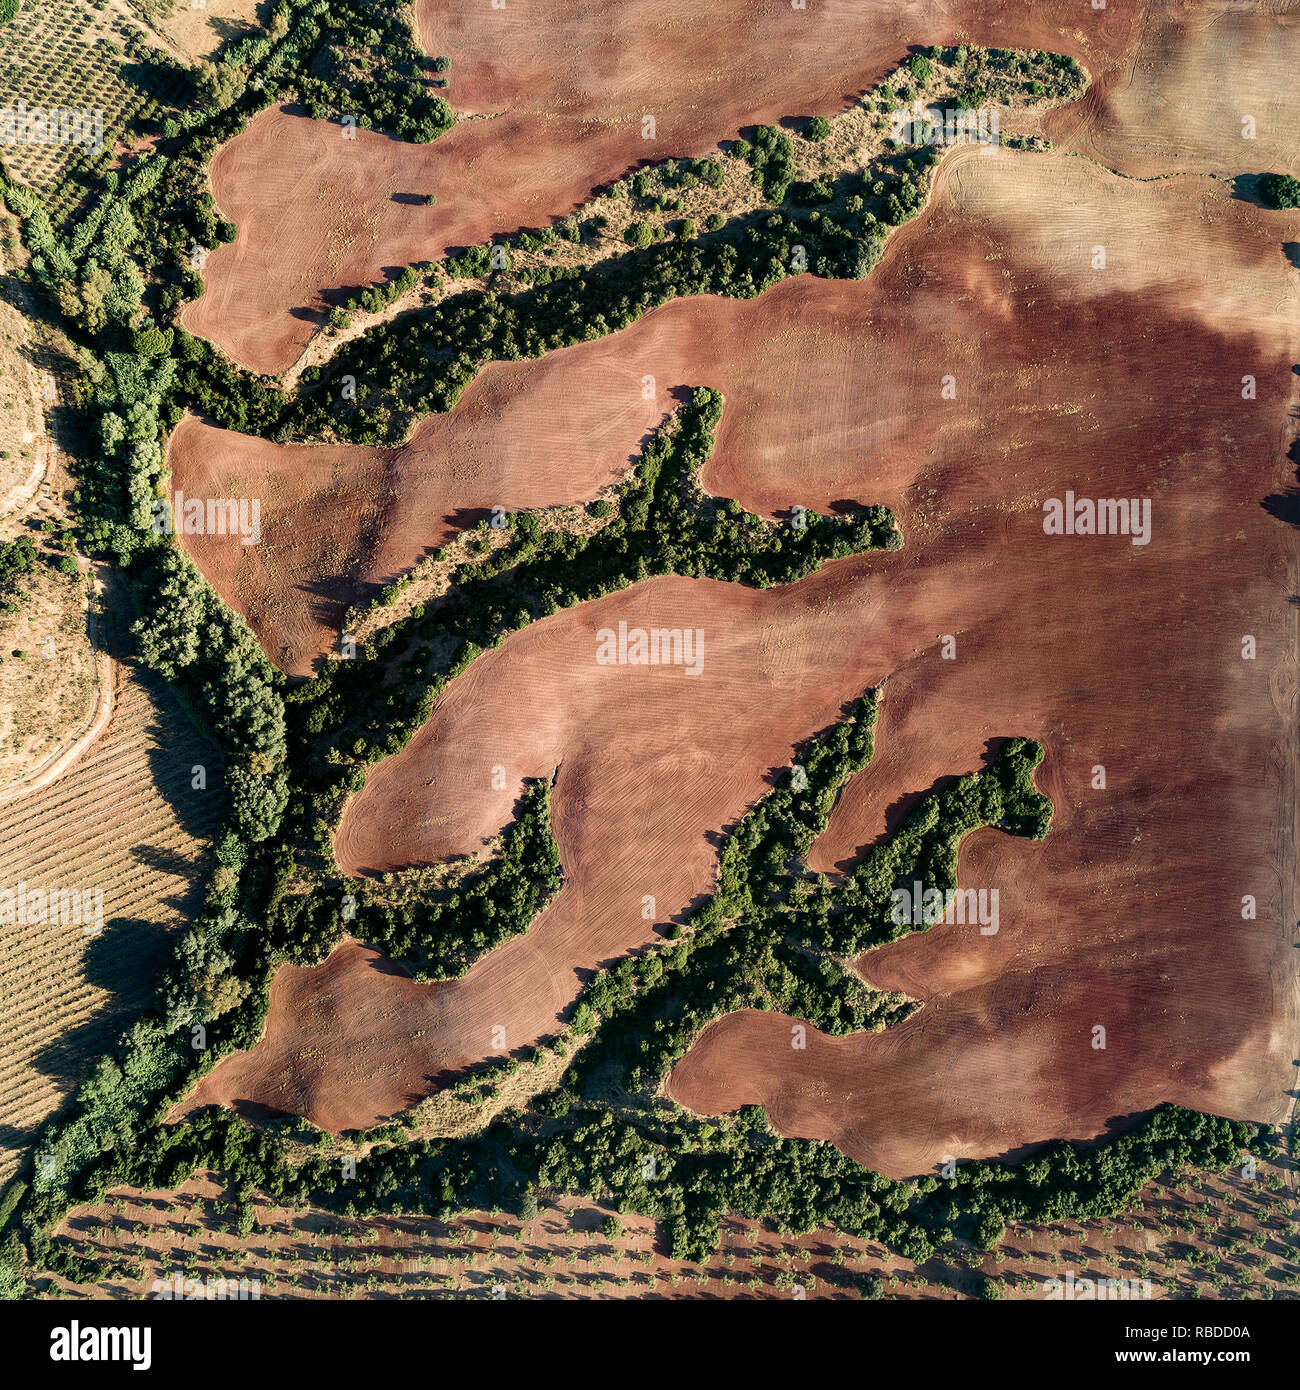 Des traces de rivières Span, Cantillana disparu. Ces images illustrent l'antenne résumé la beauté de la terre comme elle est façonnée par l'eau environnante. Des images montrent un étang de stockage de boue rouge aux couleurs incroyables, d'un vert éclatant et l'eau radioactive présente dans toute la surface de l'eau qui portent une ressemblance frappante avec les arbres. D'autres photographies montrent une incroyable île en forme de cœur et l'énergie géothermique, l'eau de source chaude d'une peinture de couleur de l'effet des dépôts estuariens et des icebergs qui ressemblent à des diamants contre un arrière-plan. La remarquable fermoirs sont une partie de l'eau.Shapes.Eeie Banque D'Images